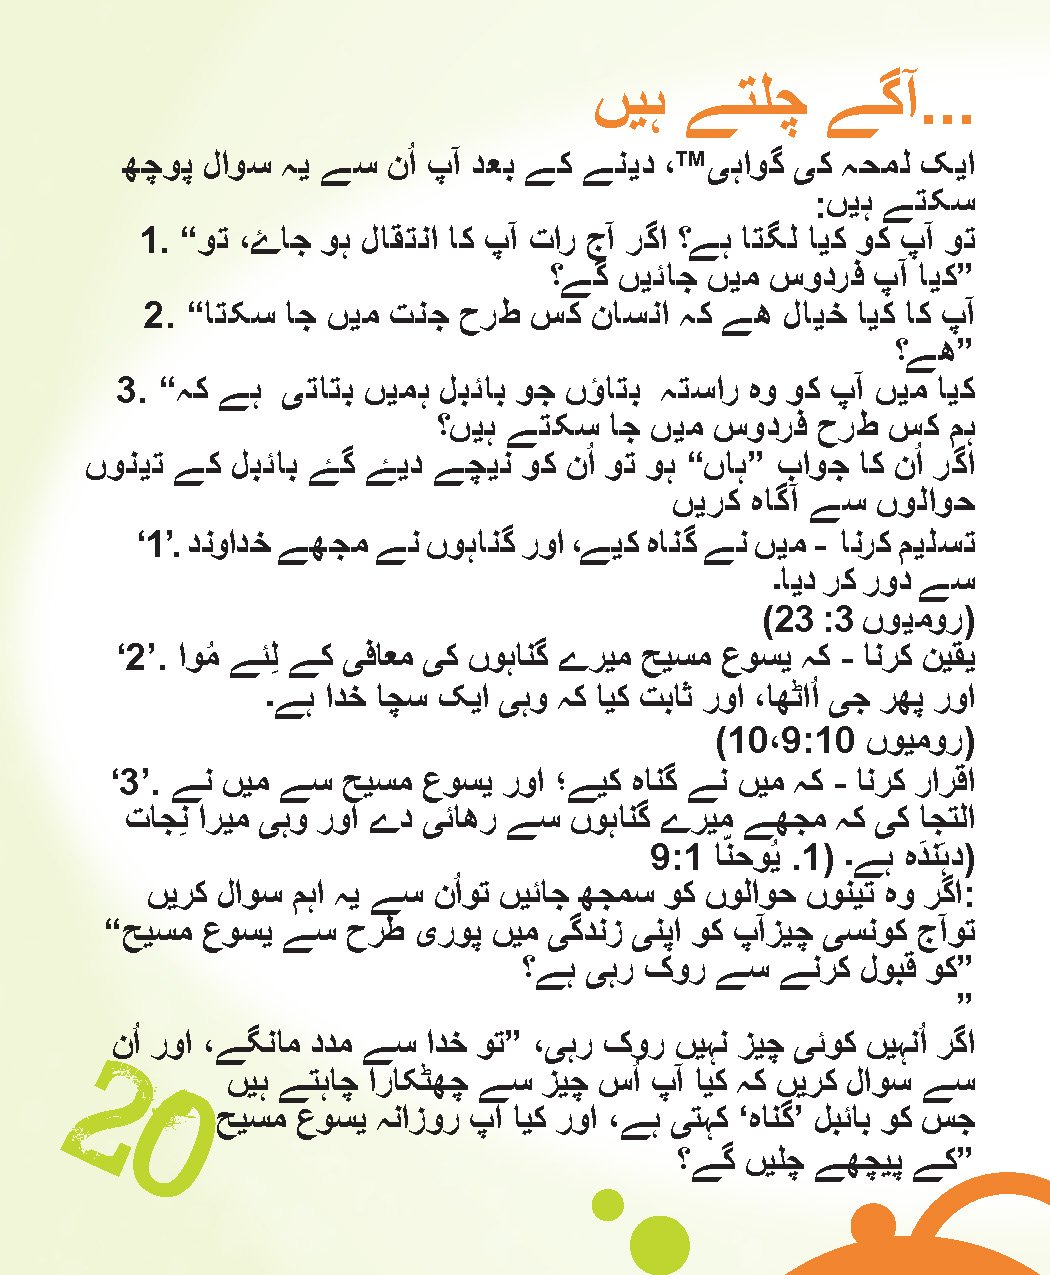 Urdu_20.jpg